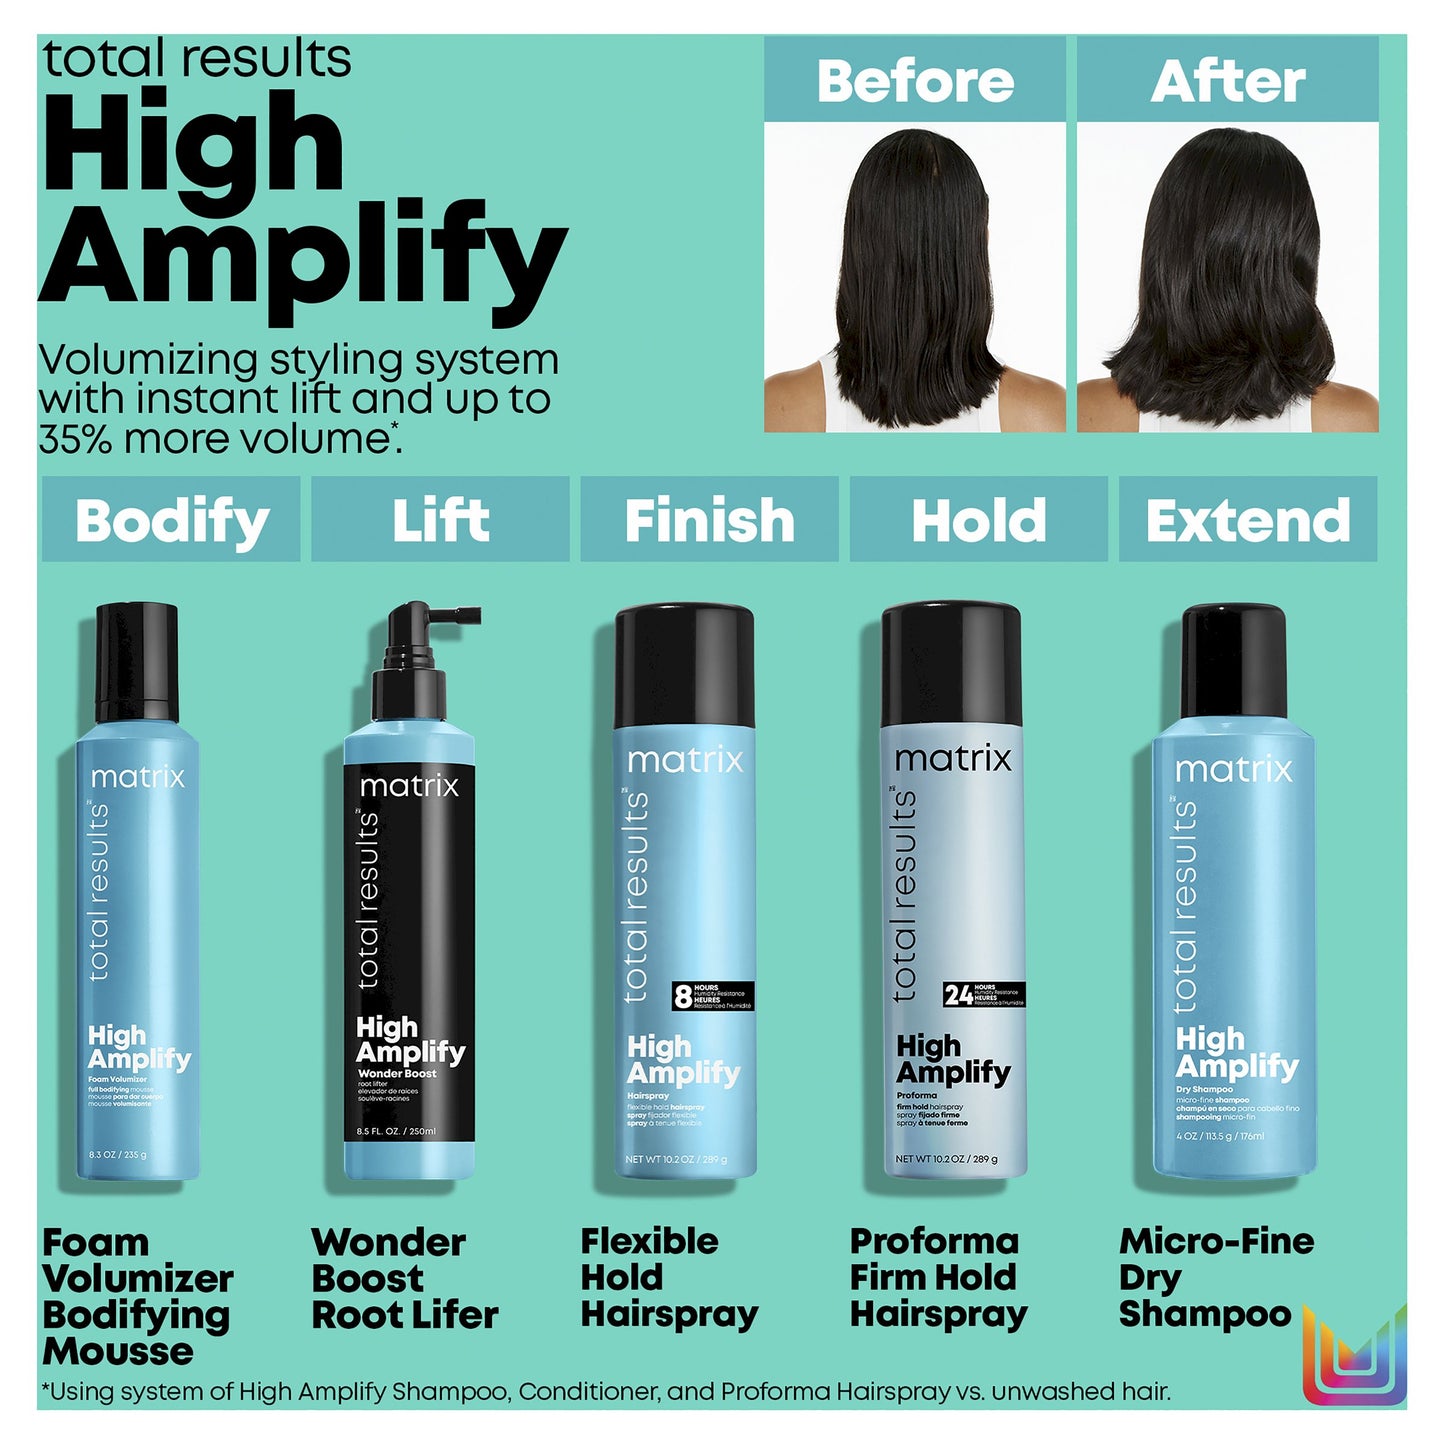 High Amplify Shampoo 300ml